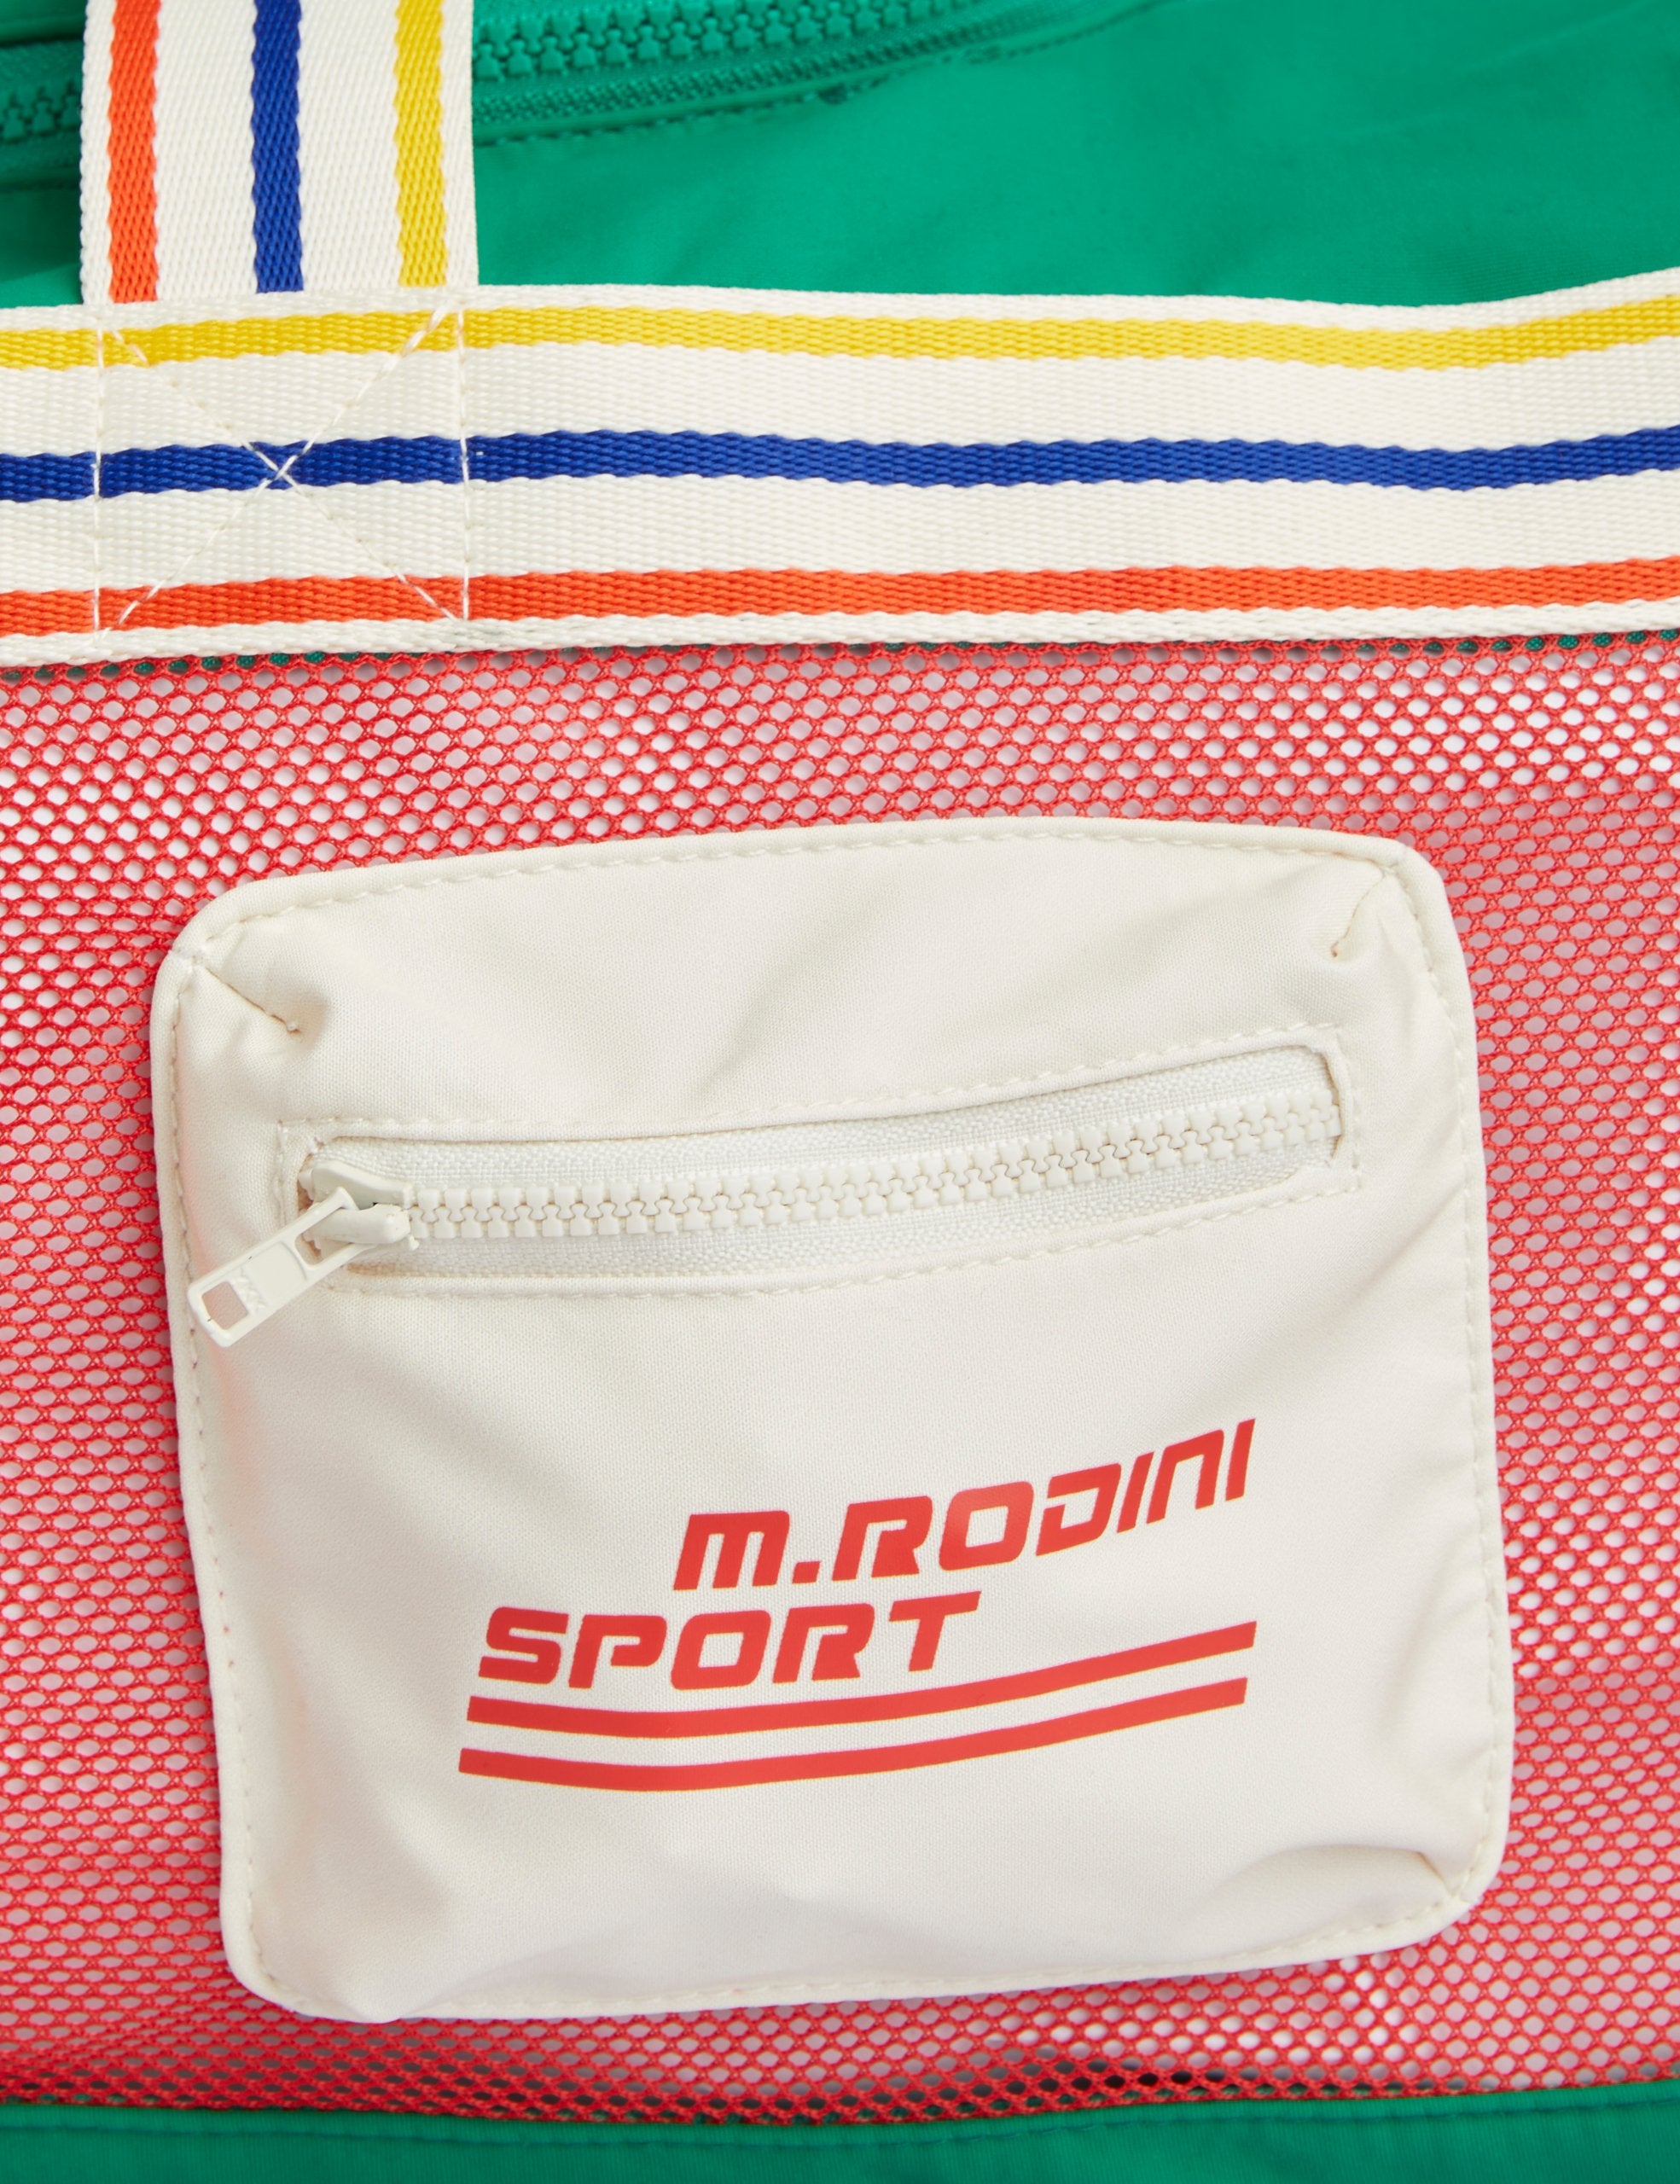 NEW Mini Rodini | M.rodini sp sport bag